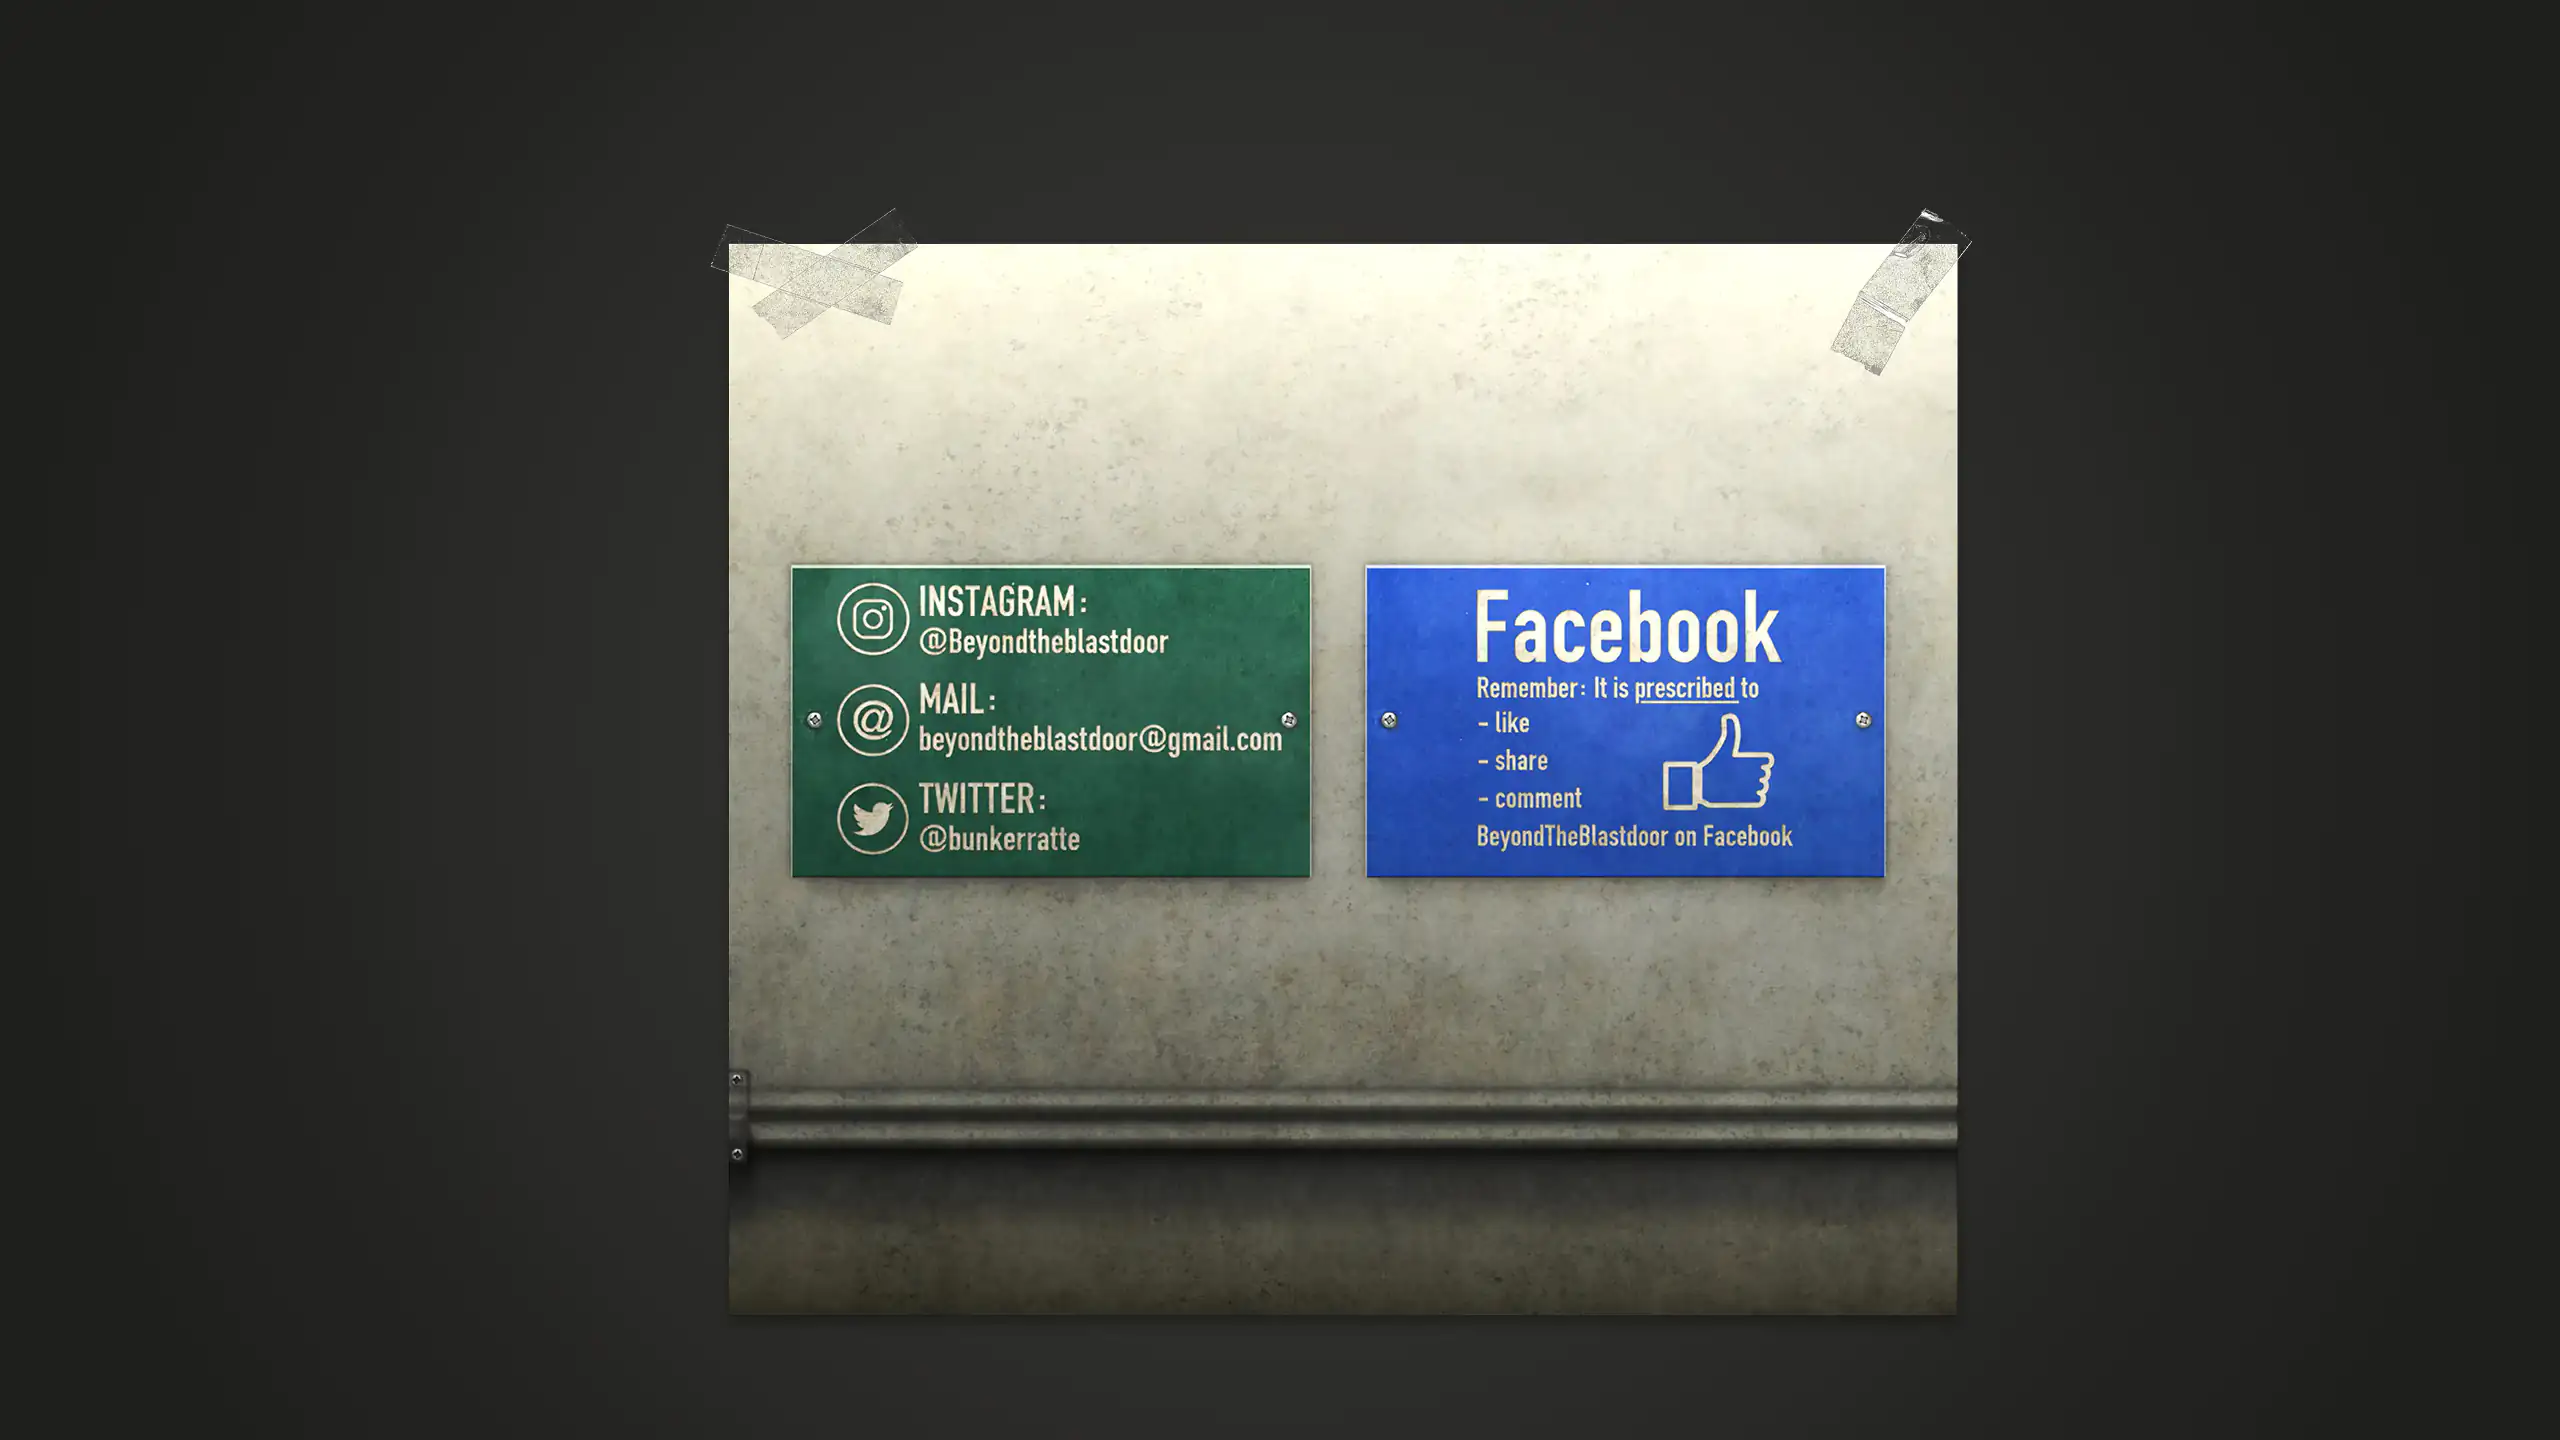 Grafik des Projektes "Beyond the Blastdoor" mit den Social Media-Kanälen als Schilder an einer Betonwand, auf dunkelgrauen Hintergrund